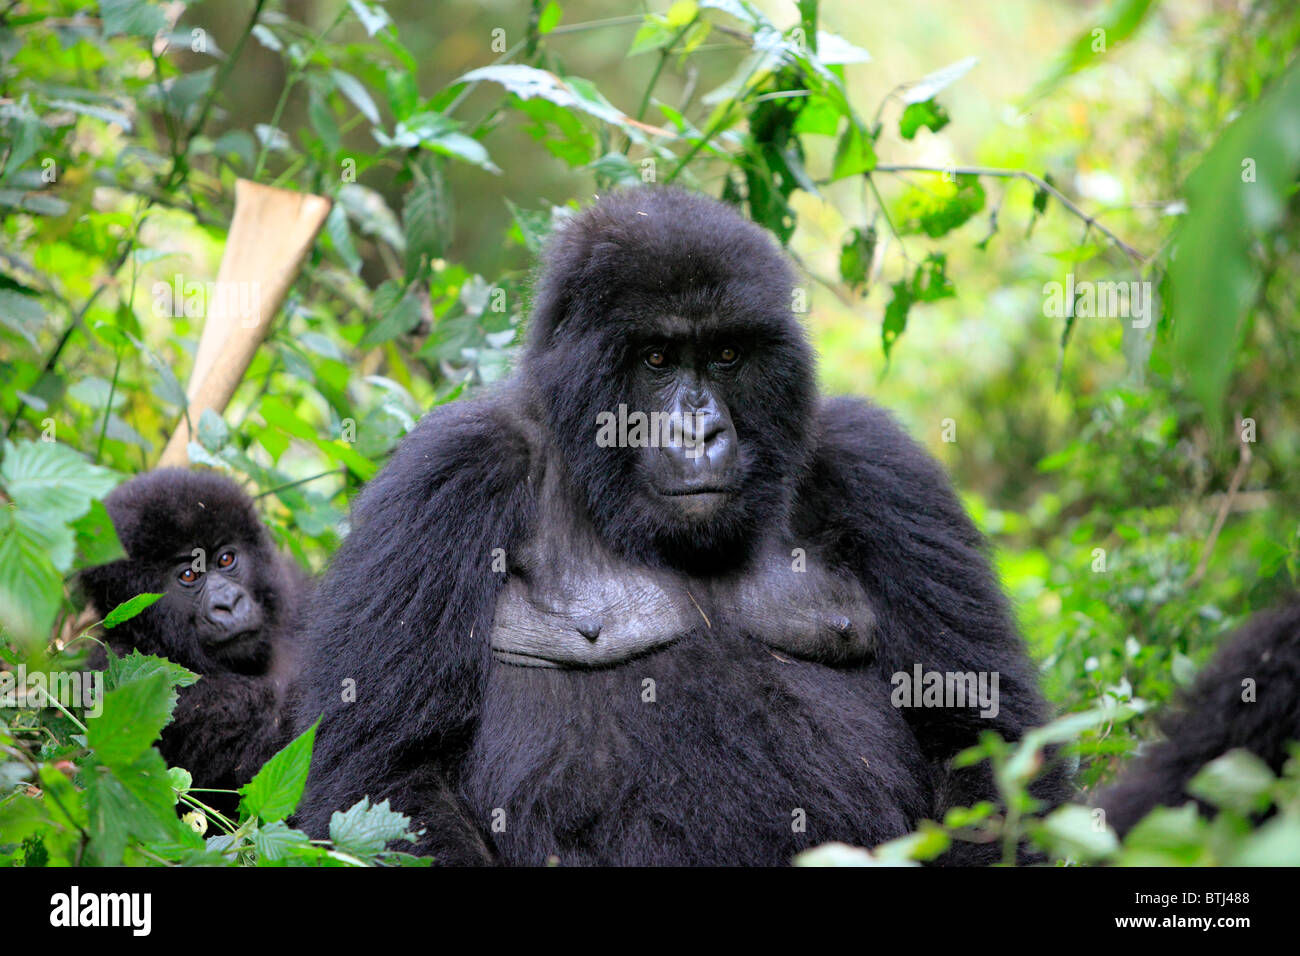 Mountain Gorilla (Gorilla beringei beringei), Parc National des Volcans, Rwanda Stock Photo